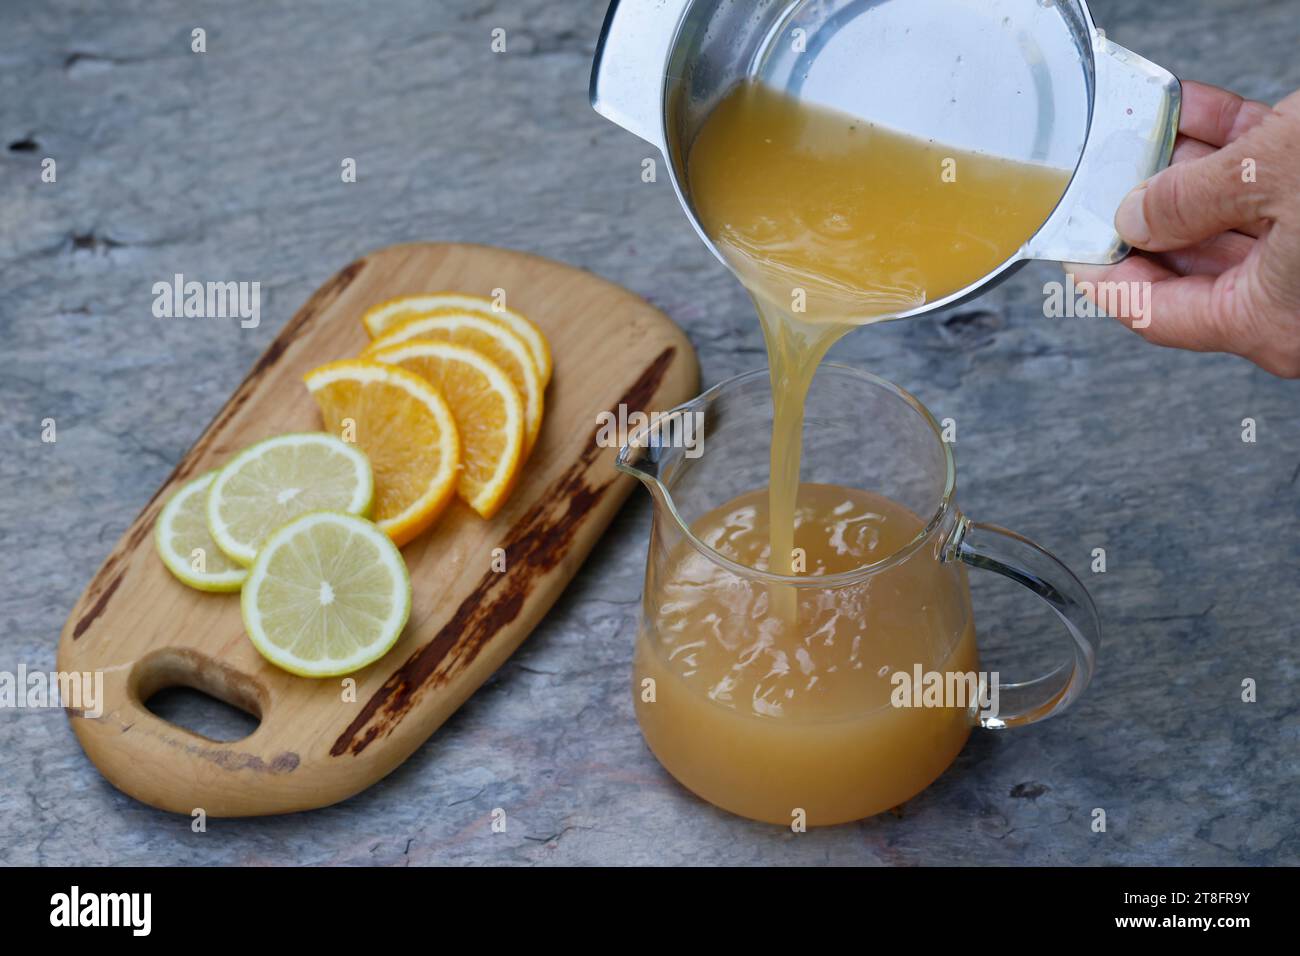 Eistee, Eis-Tee aus Kräutertee gemischt mit Apfelsaft, Saft von Orange, Saft von Zitrone, Iced Tea, Ice Tea Schritt 3: Saft einer frischen Orange und Foto Stock